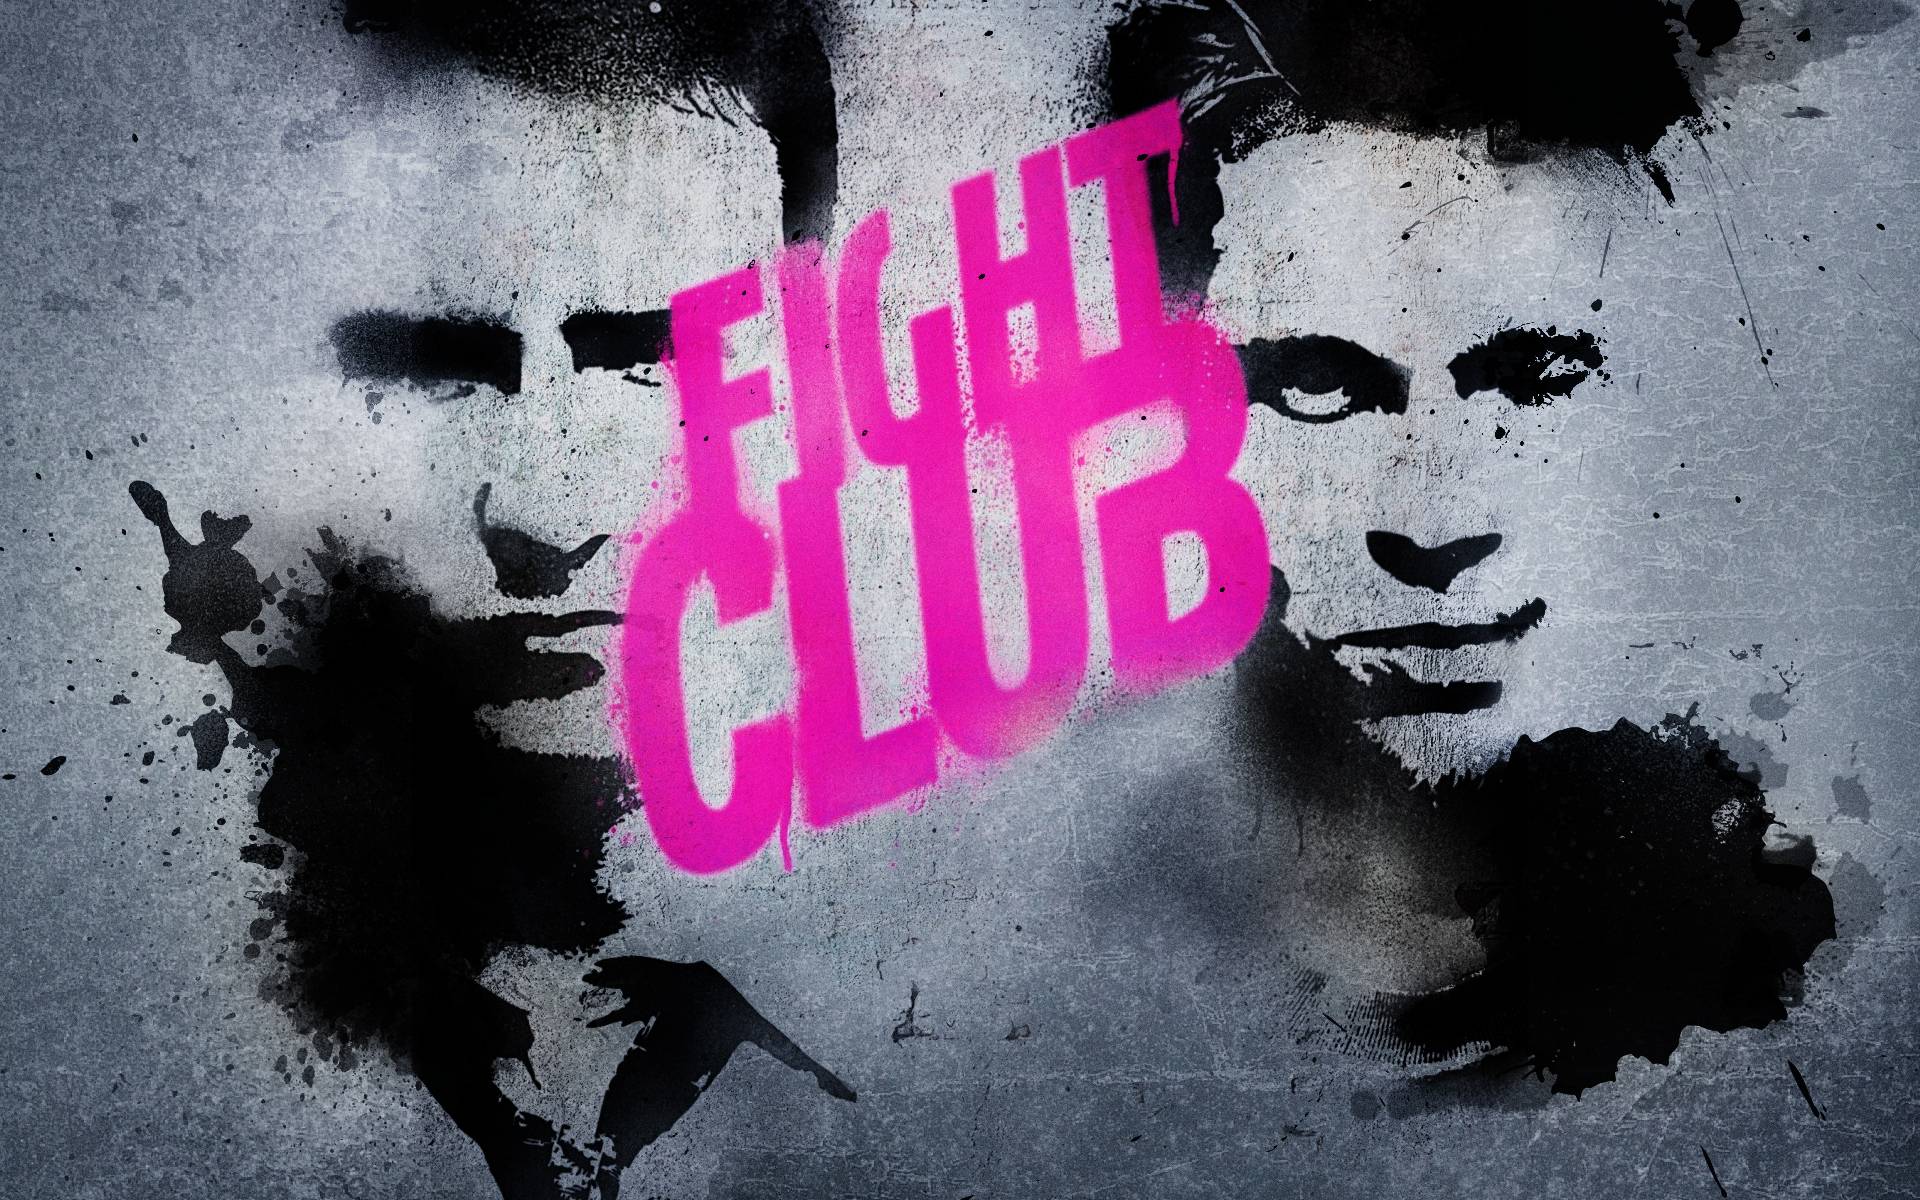 Fight Club HD Wallpaper